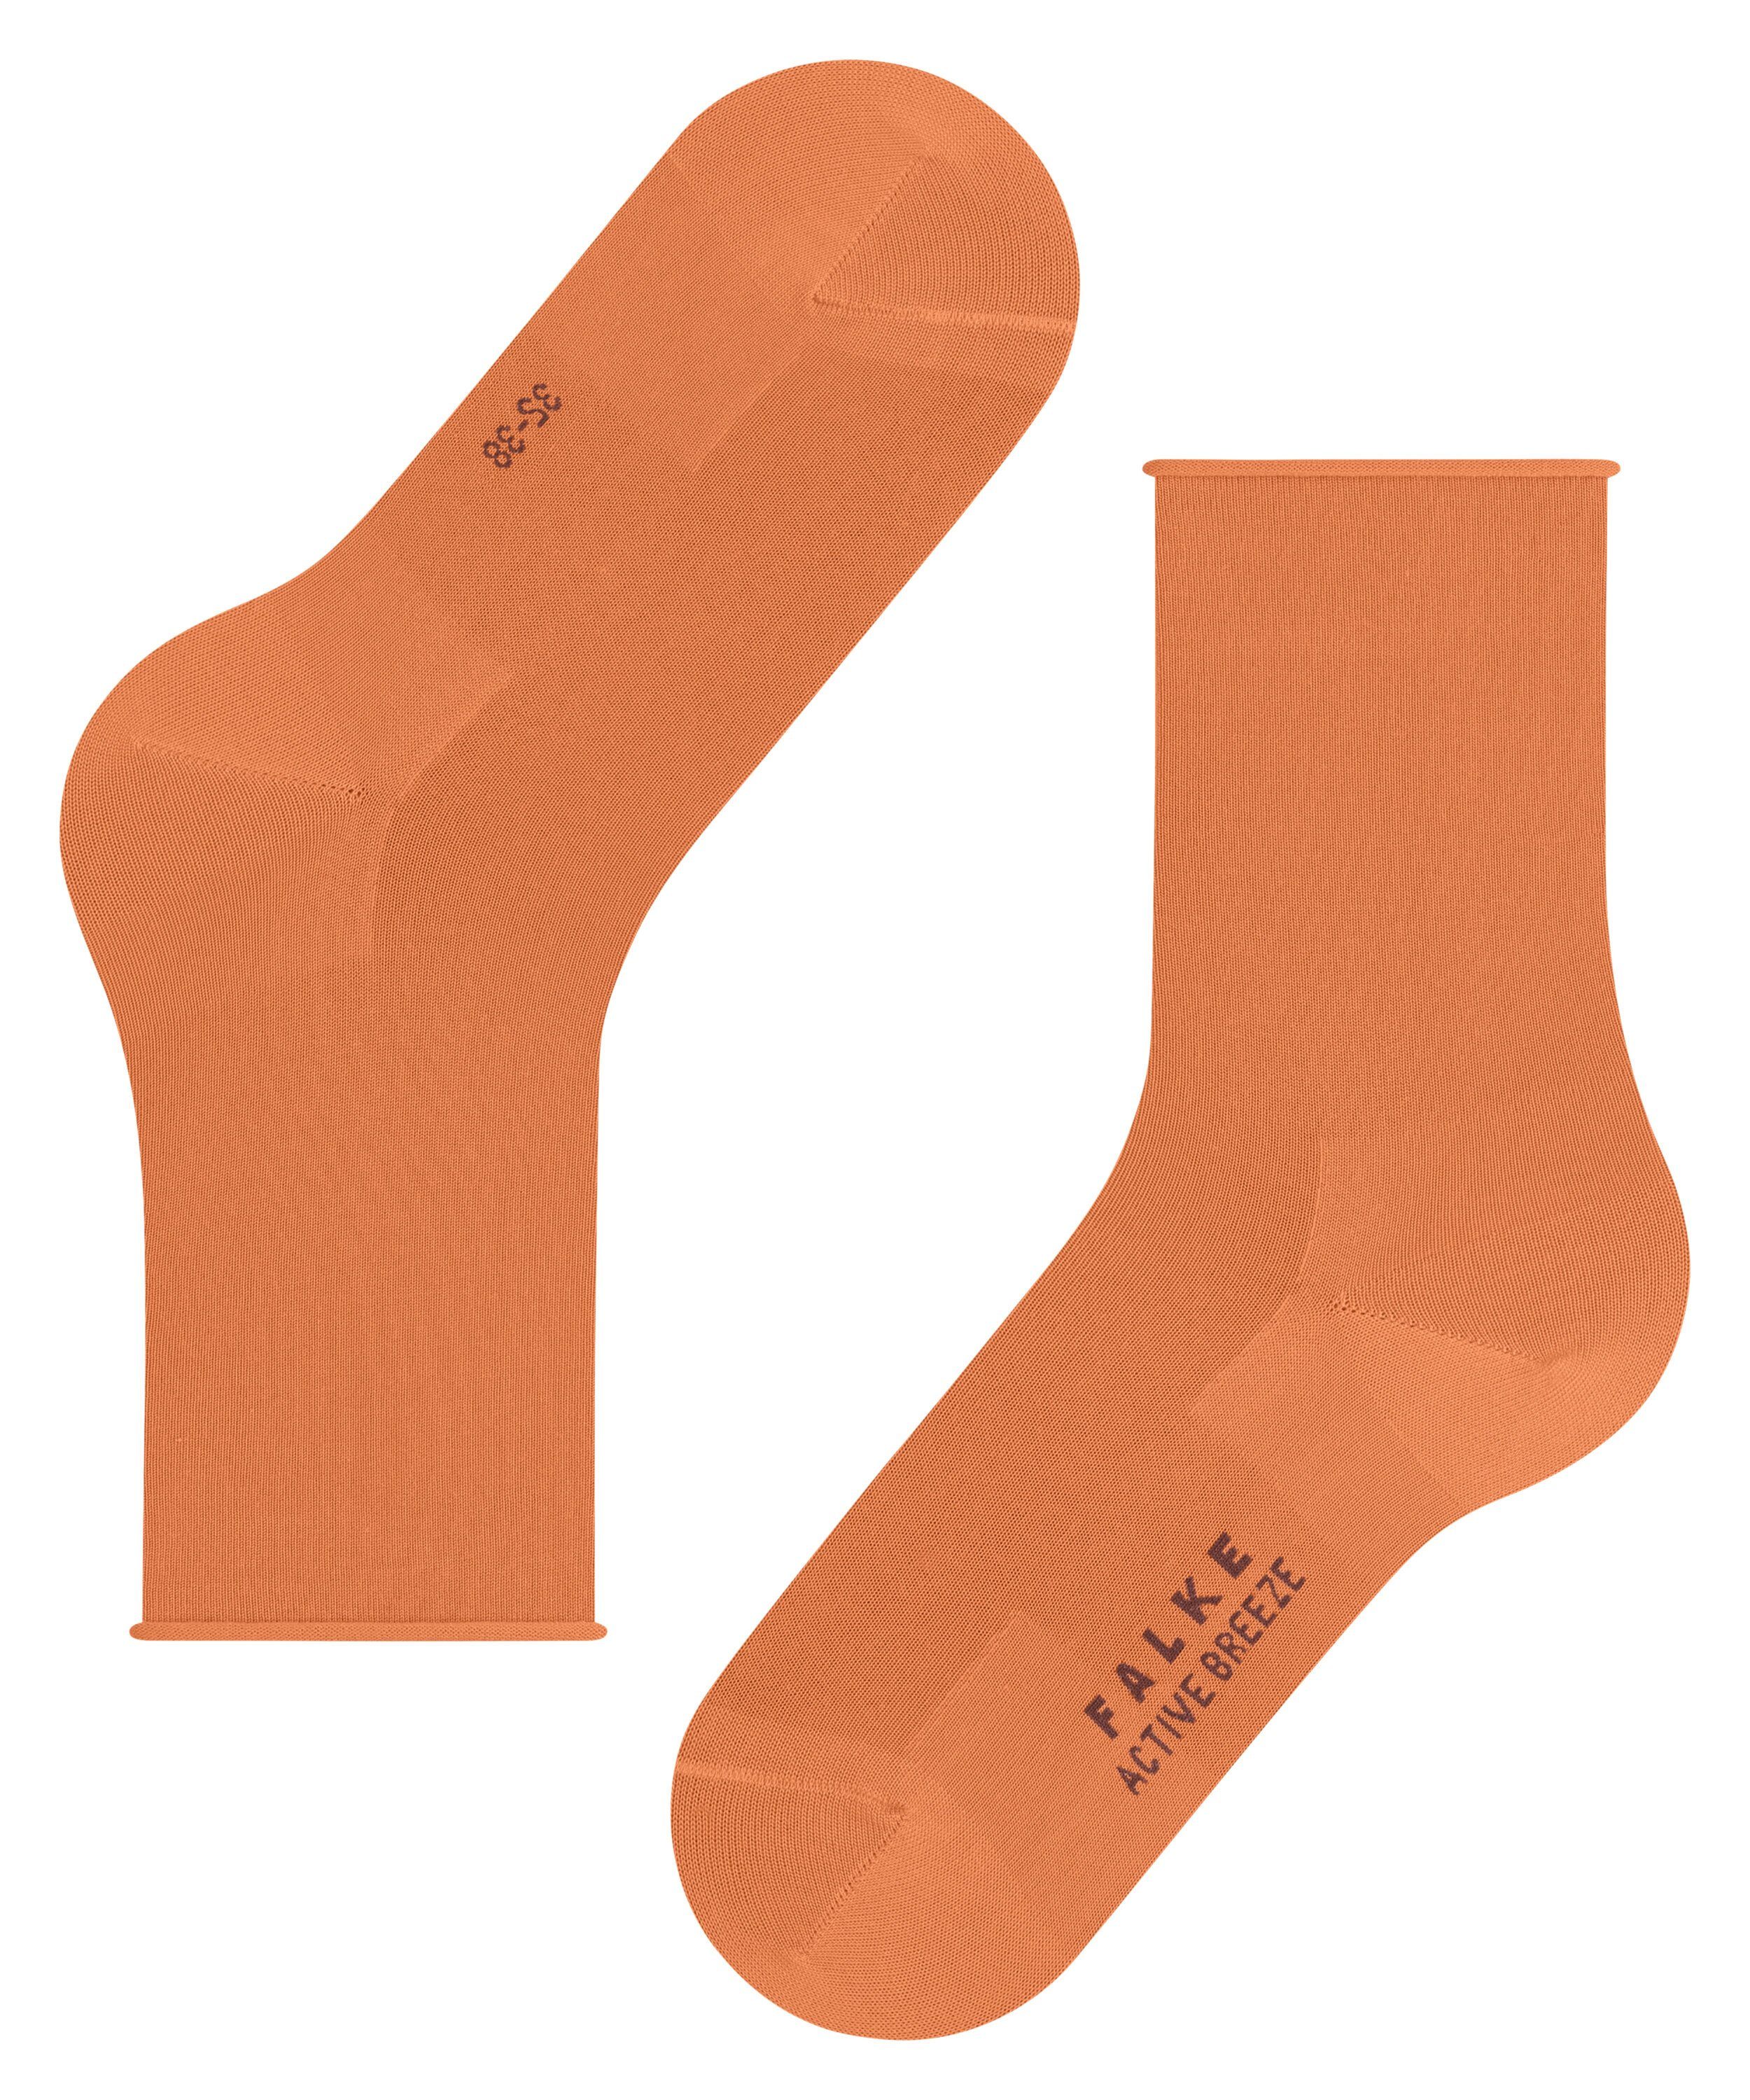 Breeze Active FALKE (8576) tandoori (1-Paar) Socken